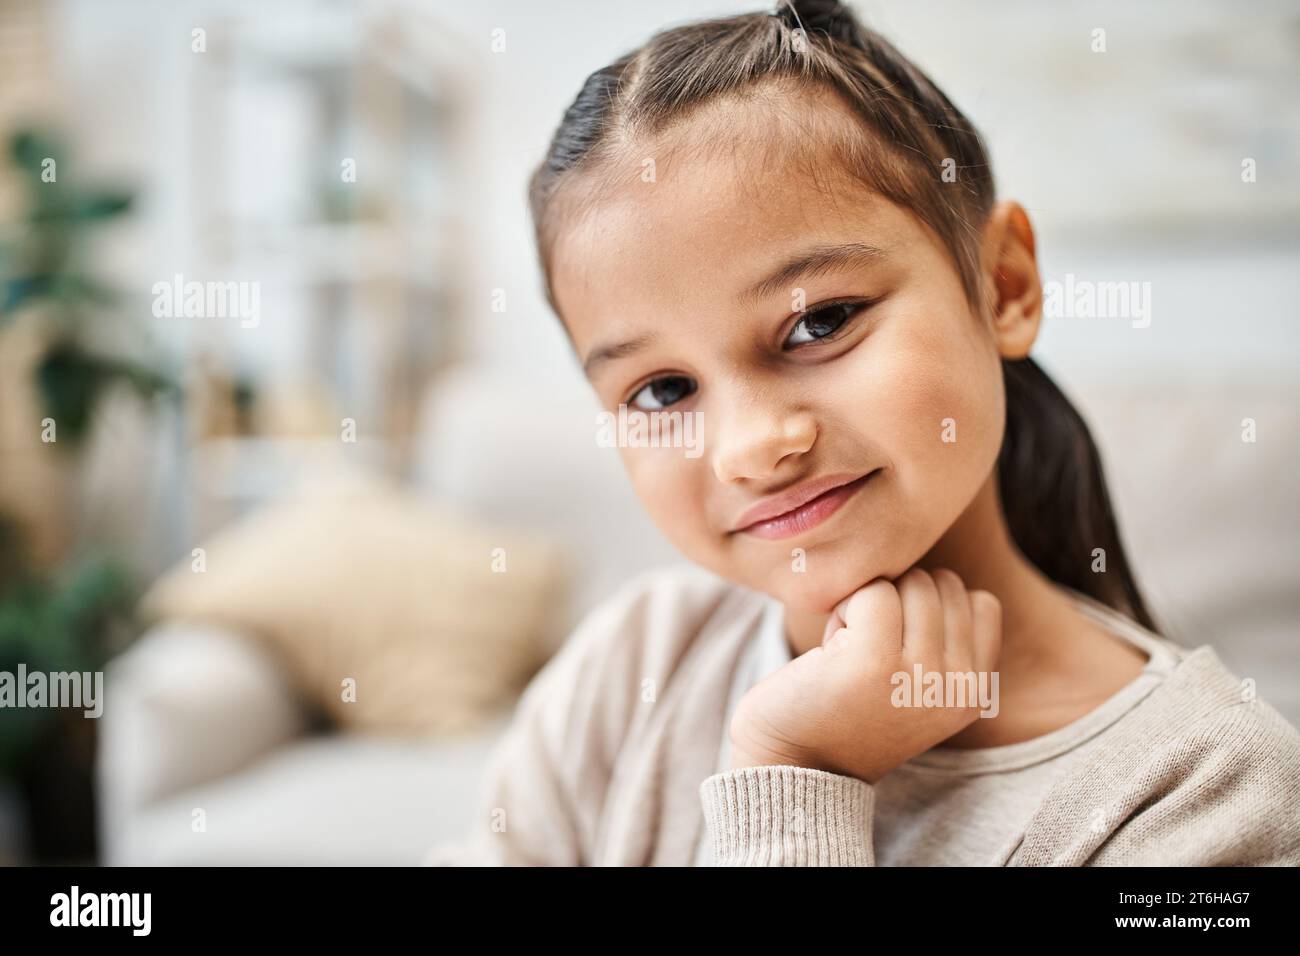 ritratto di una ragazza sorridente dell'età elementare con i capelli bruna che guarda la macchina fotografica in un appartamento moderno Foto Stock